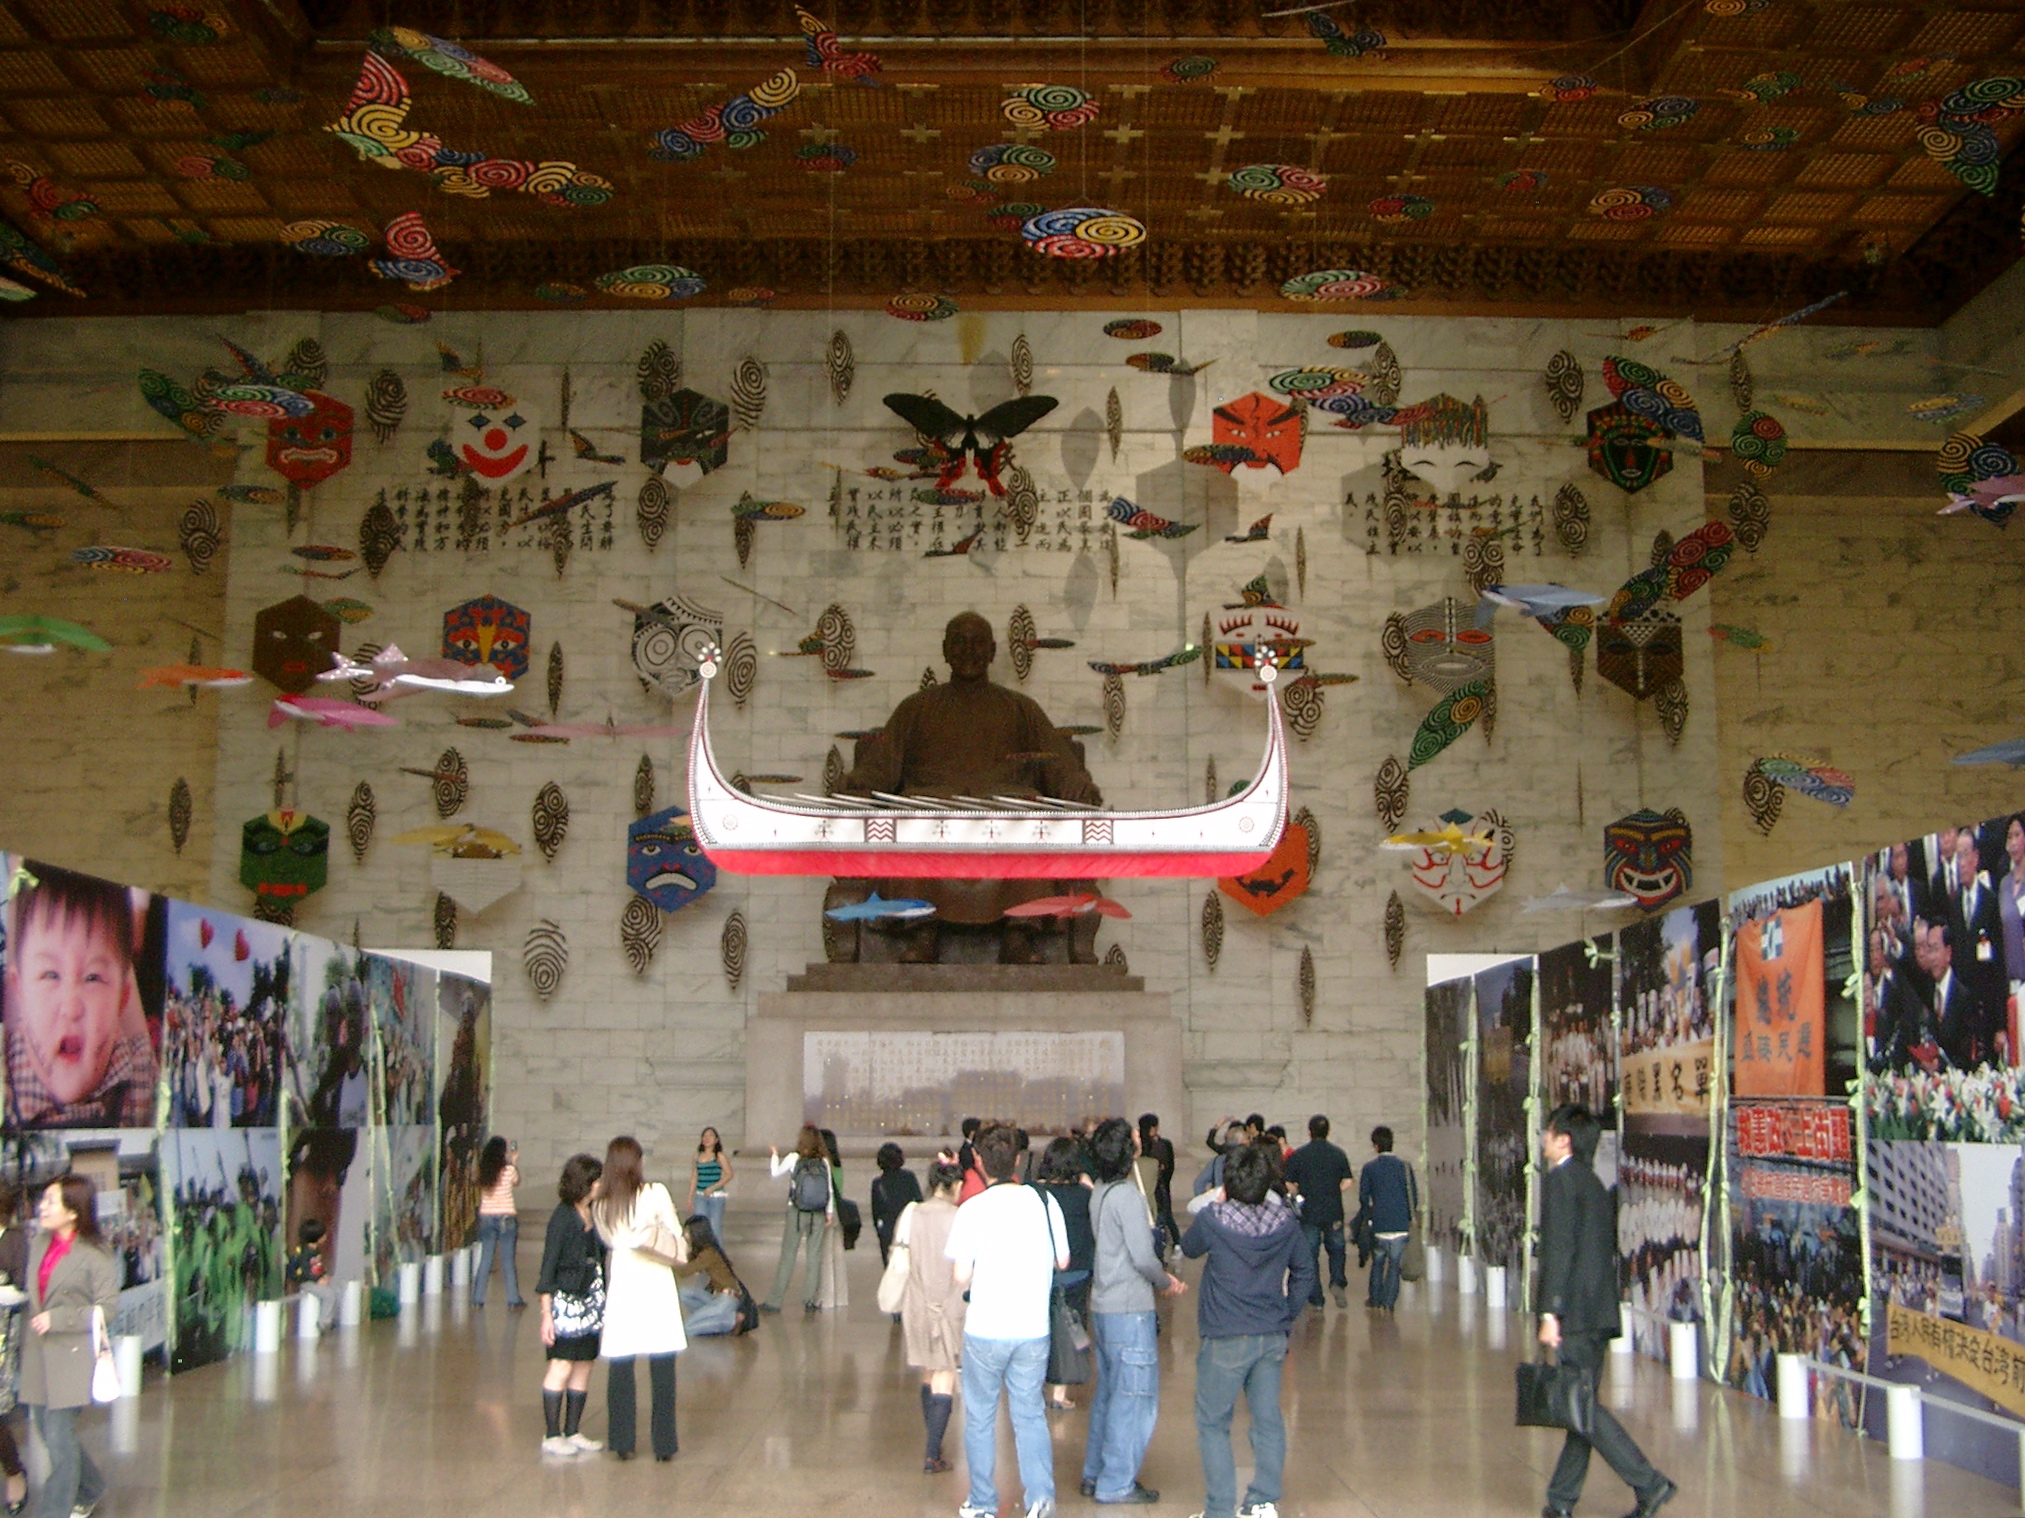 Innenraum der CKS-Halle im März 2008: Zu Füßen des Diktators eine Ausstellung über Taiwans Demokratiebewegung. Die Drachen sollten den "Wind der Freiheit" o.ä. symbolisieren.